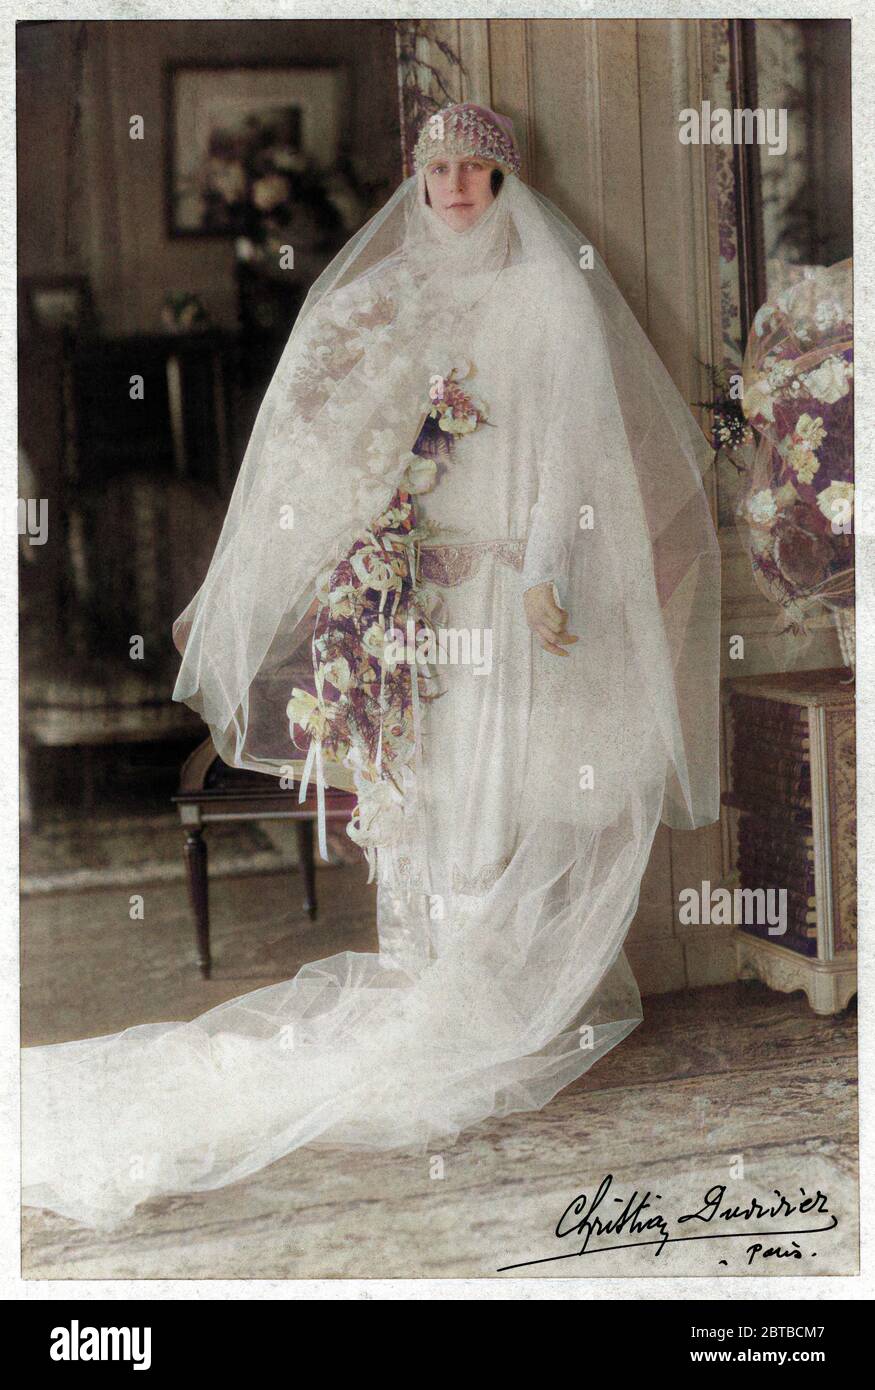 1920 ca , Paris , FRANCE : A noble woman in wedding dress attire . Photo by Christian Duvivier , Paris . The photograph Duvivier was the father of most celebrated french movie director Julien Duvivier ( 1896 - 1967 ) . DIGITALLY COLORIZED . - MARRIAGE - MATRIMONIO - NOZZE - abito da SPOSA - WEDDING dress PARTY - BRIDE -  cerimonia   - FOTO STORICHE - HISTORY PHOTOS - STOCK  -SVIZZERA - hat - cappello - FASHION XX CENTURY - MODA NOVECENTO - hat - cappello cuffia - thulle - tulle - strascico  - FAMIGLIA - FAMILY - PARENTI - festa - party - ricevimento  - velo - veil - flowers - fiori - fiore - r Stock Photo